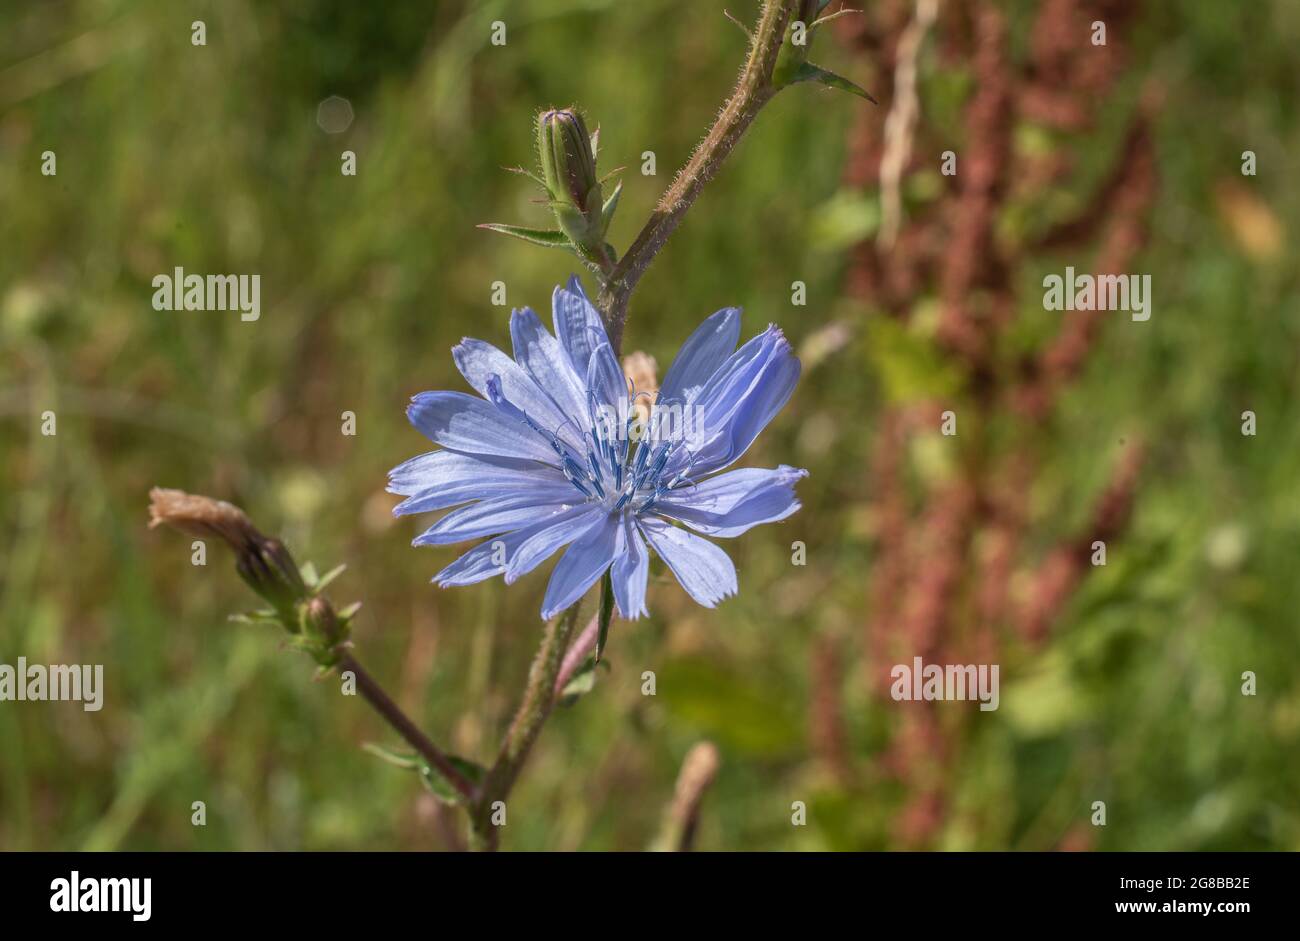 una sola flor de achicoria con floretes azules y estambres azules a la luz del sol Foto de stock